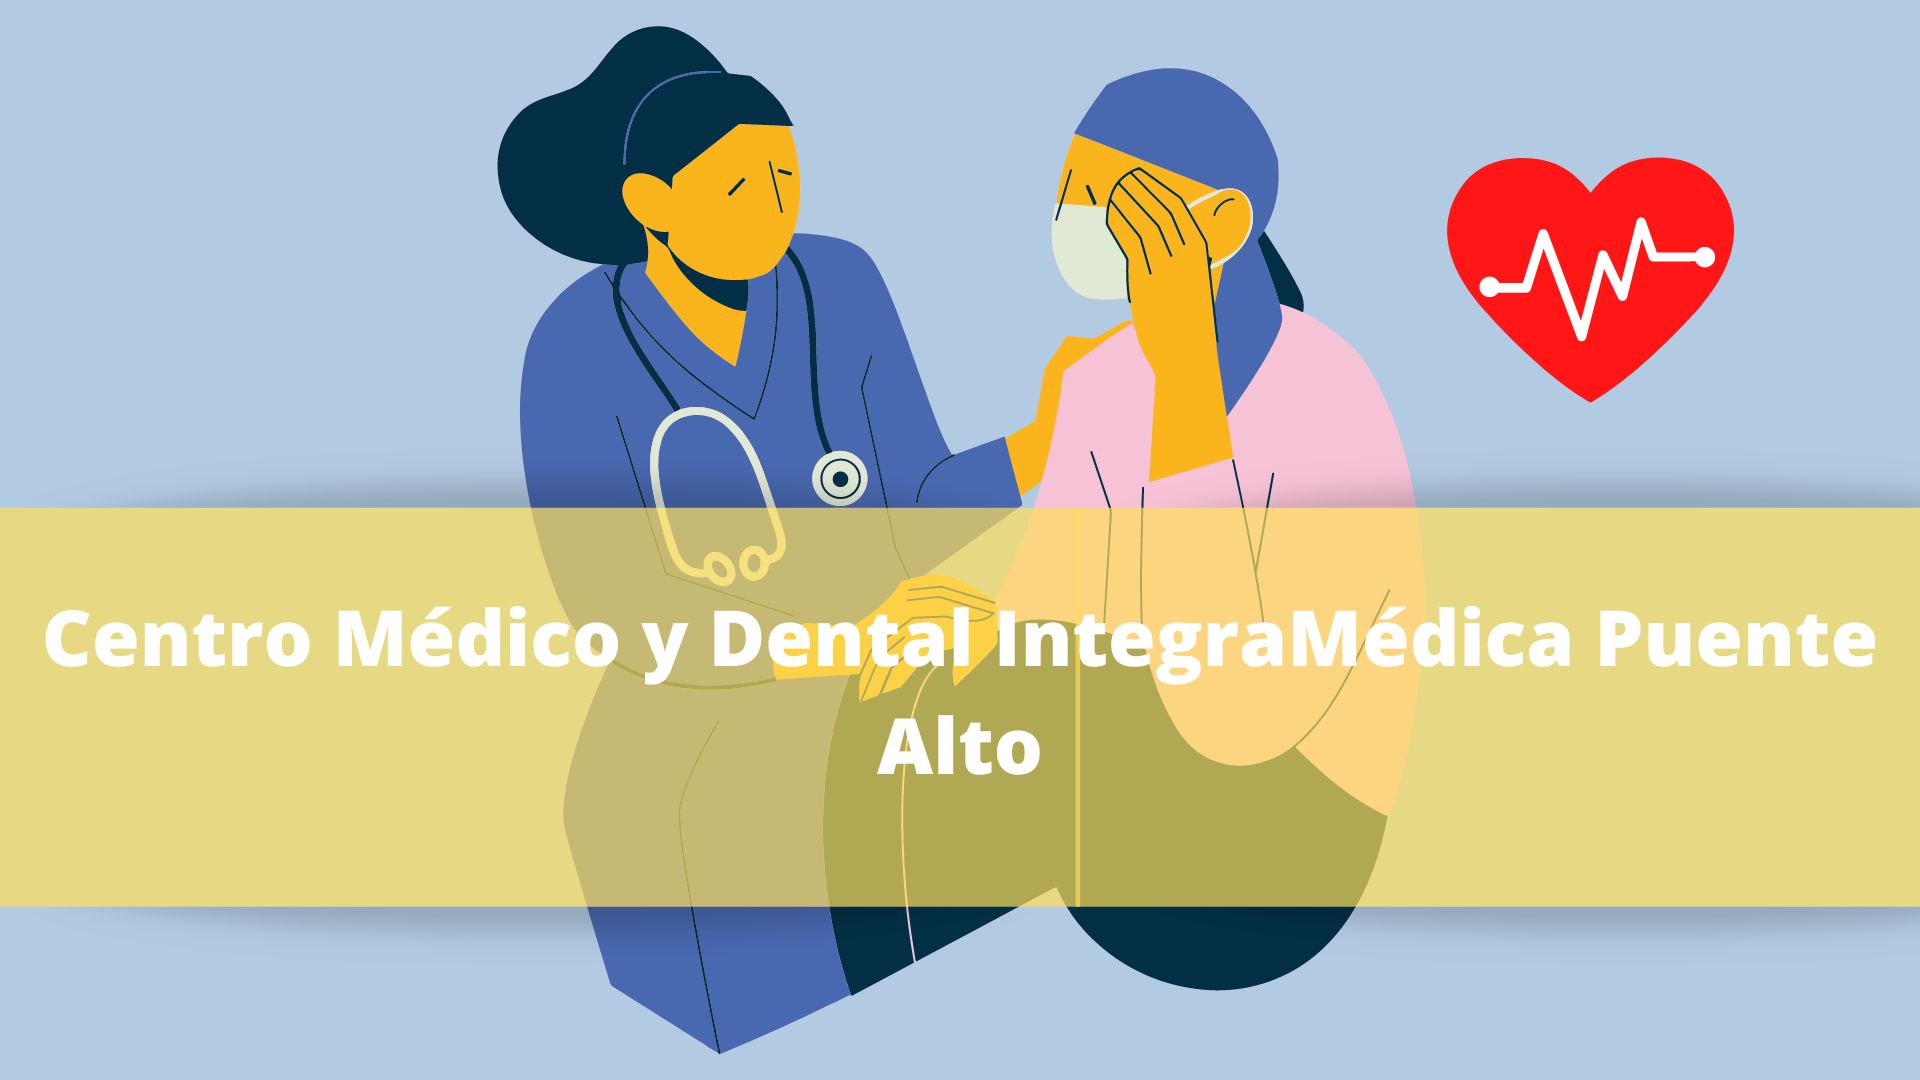 Centro Médico y Dental IntegraMédica Puente Alto